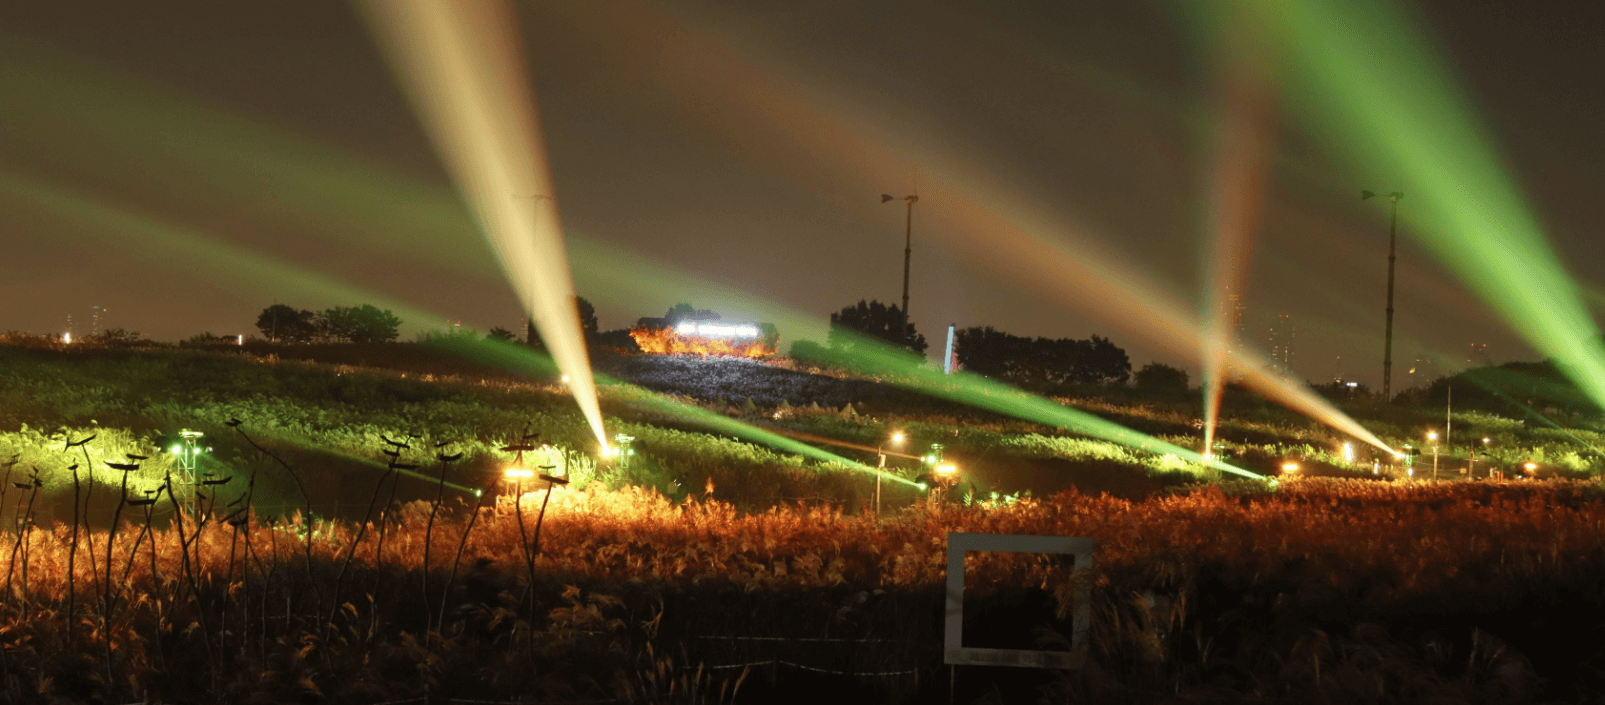 서울 하늘공원 억새축제 기간&#44; 꿀팁 완벽 정리